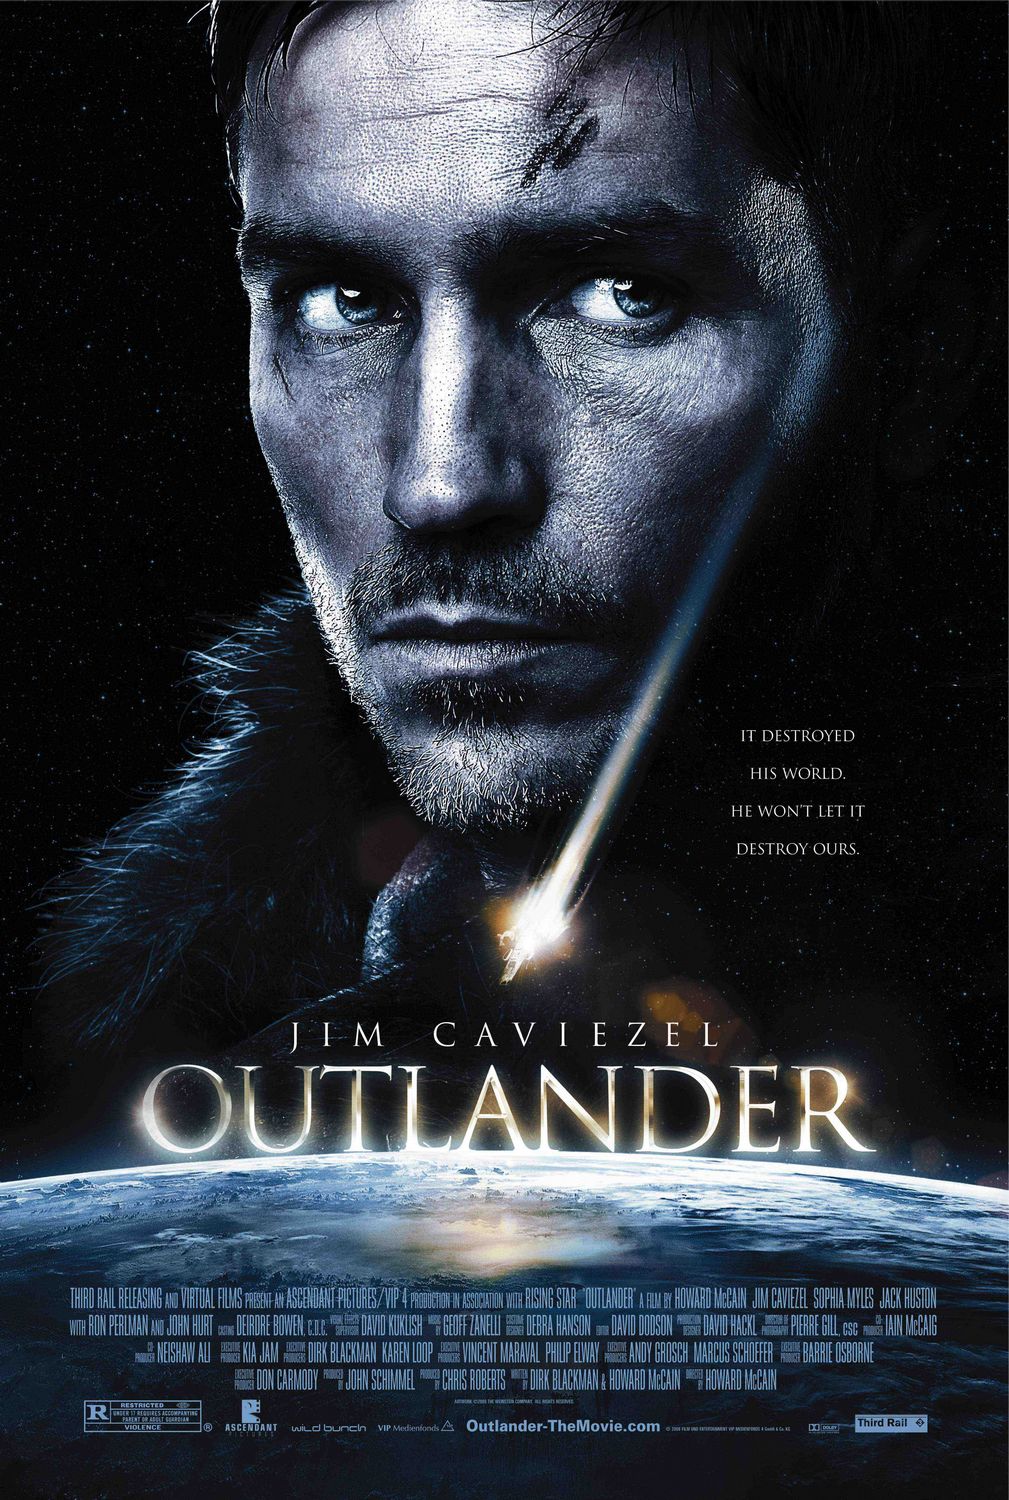 FULL MOVIE: Outlander (2008)